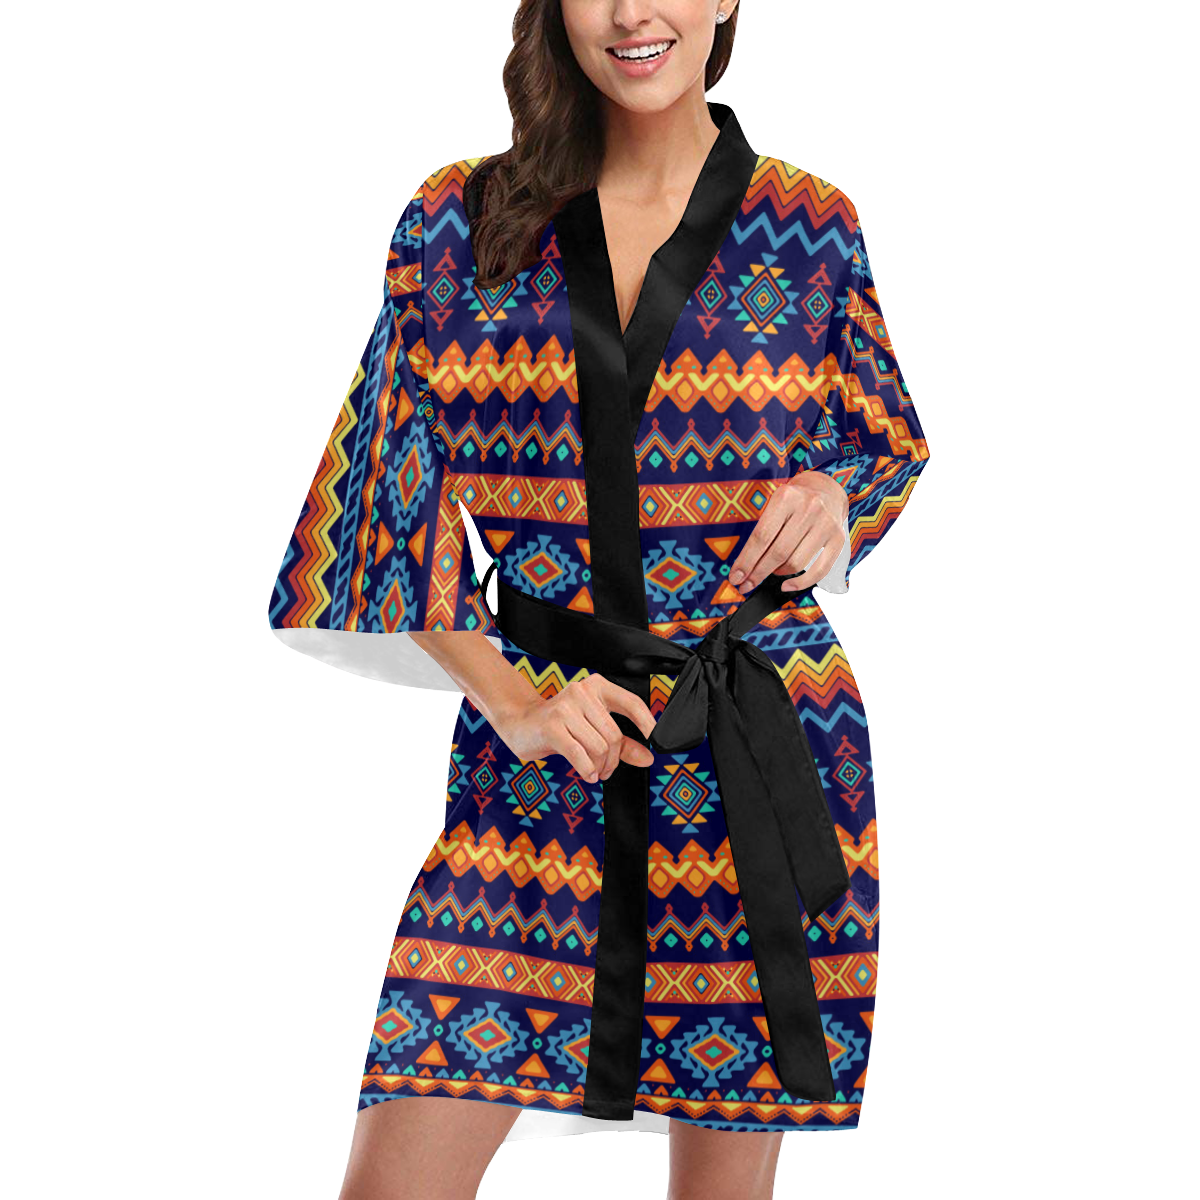 Awesome Ethnic Boho Design Kimono Robe